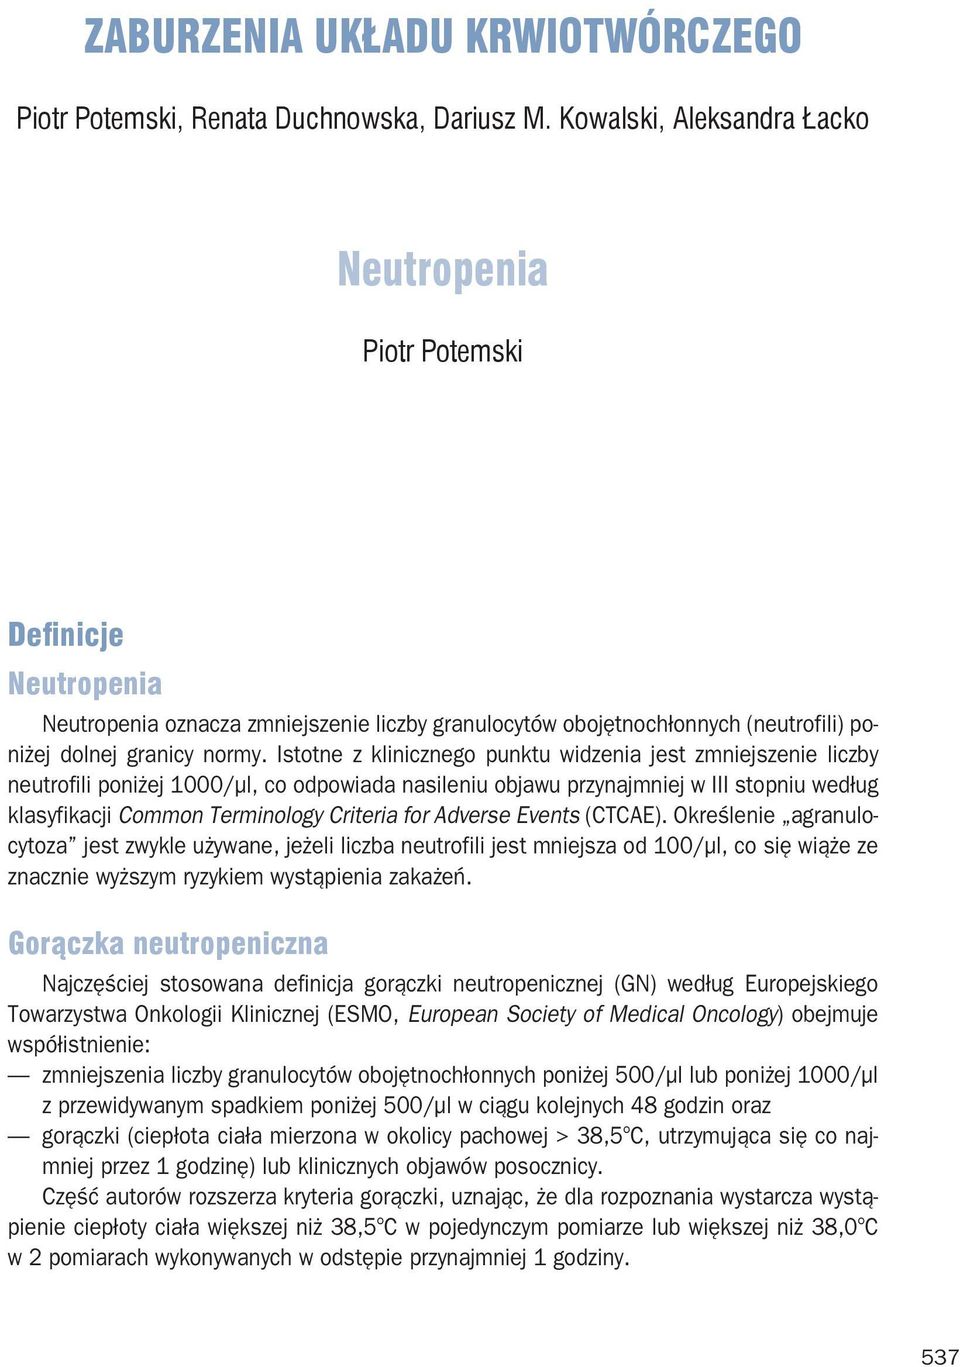 Istotne z klinicznego punktu widzenia jest zmniejszenie liczby neutrofili poniżej 1000/µl, co odpowiada nasileniu objawu przynajmniej w III stopniu według klasyfikacji Common Terminology Criteria for